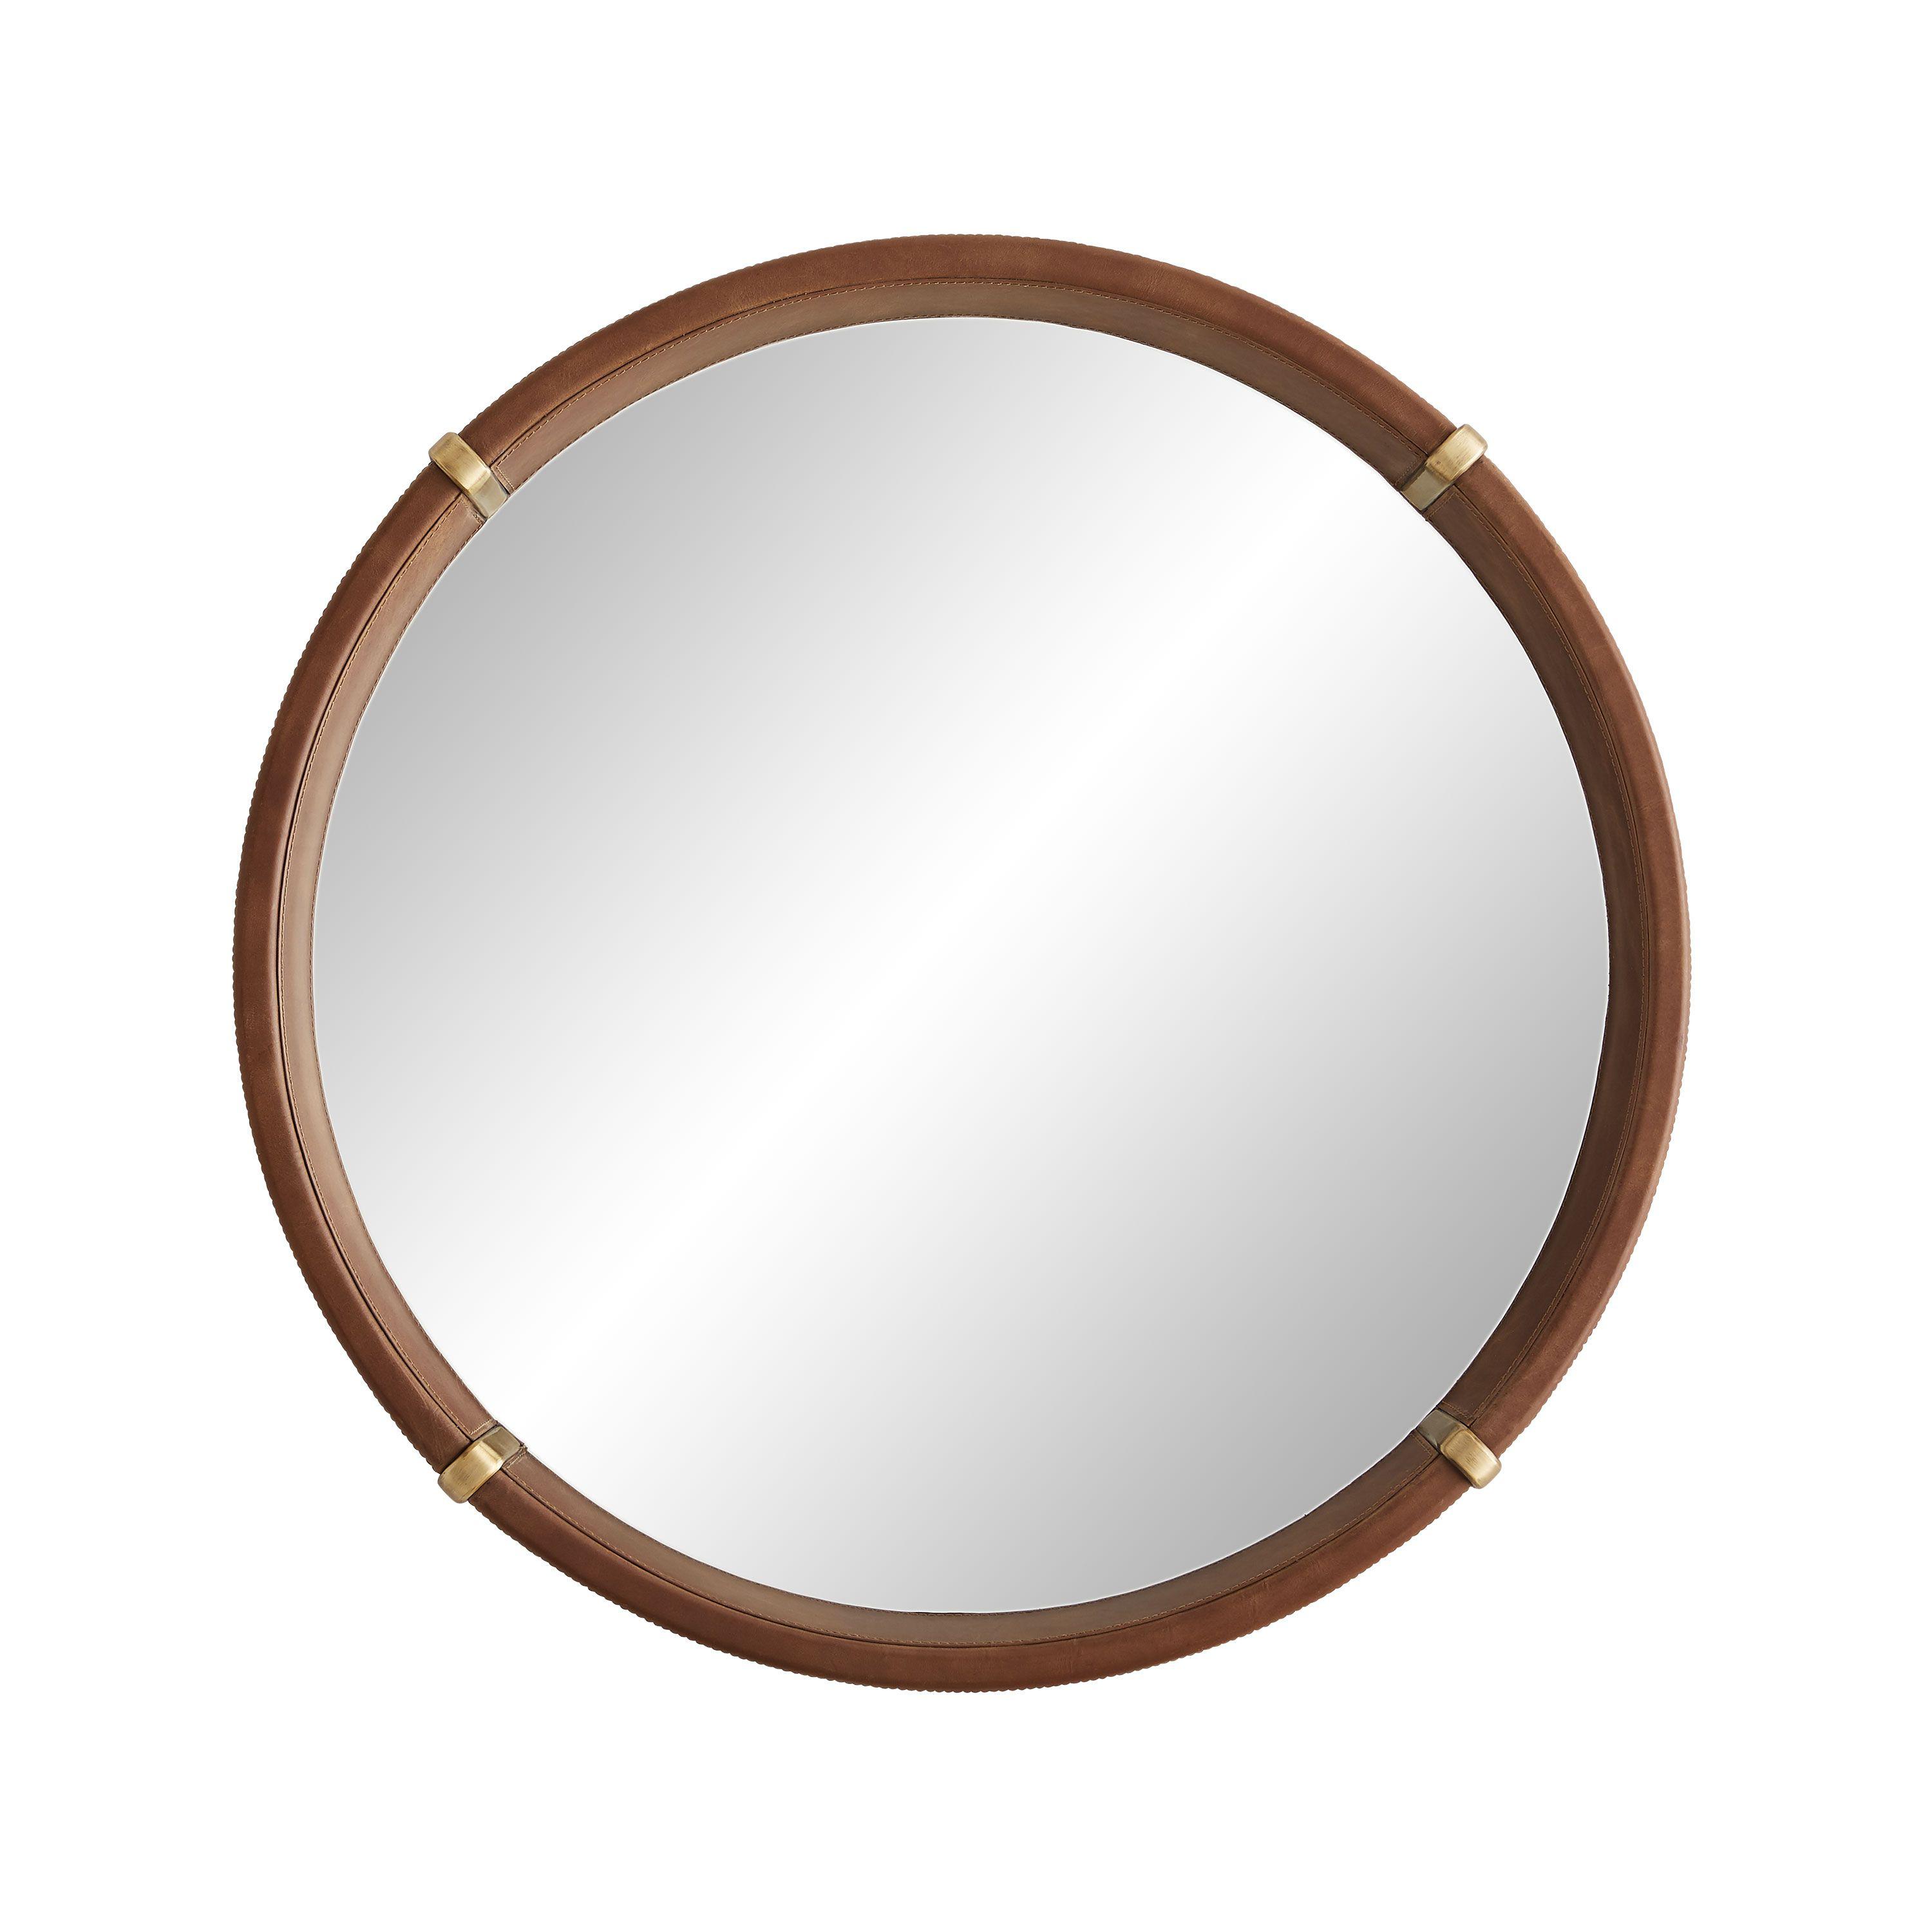 Купить Настенное зеркало Edmund Mirror в интернет-магазине roooms.ru